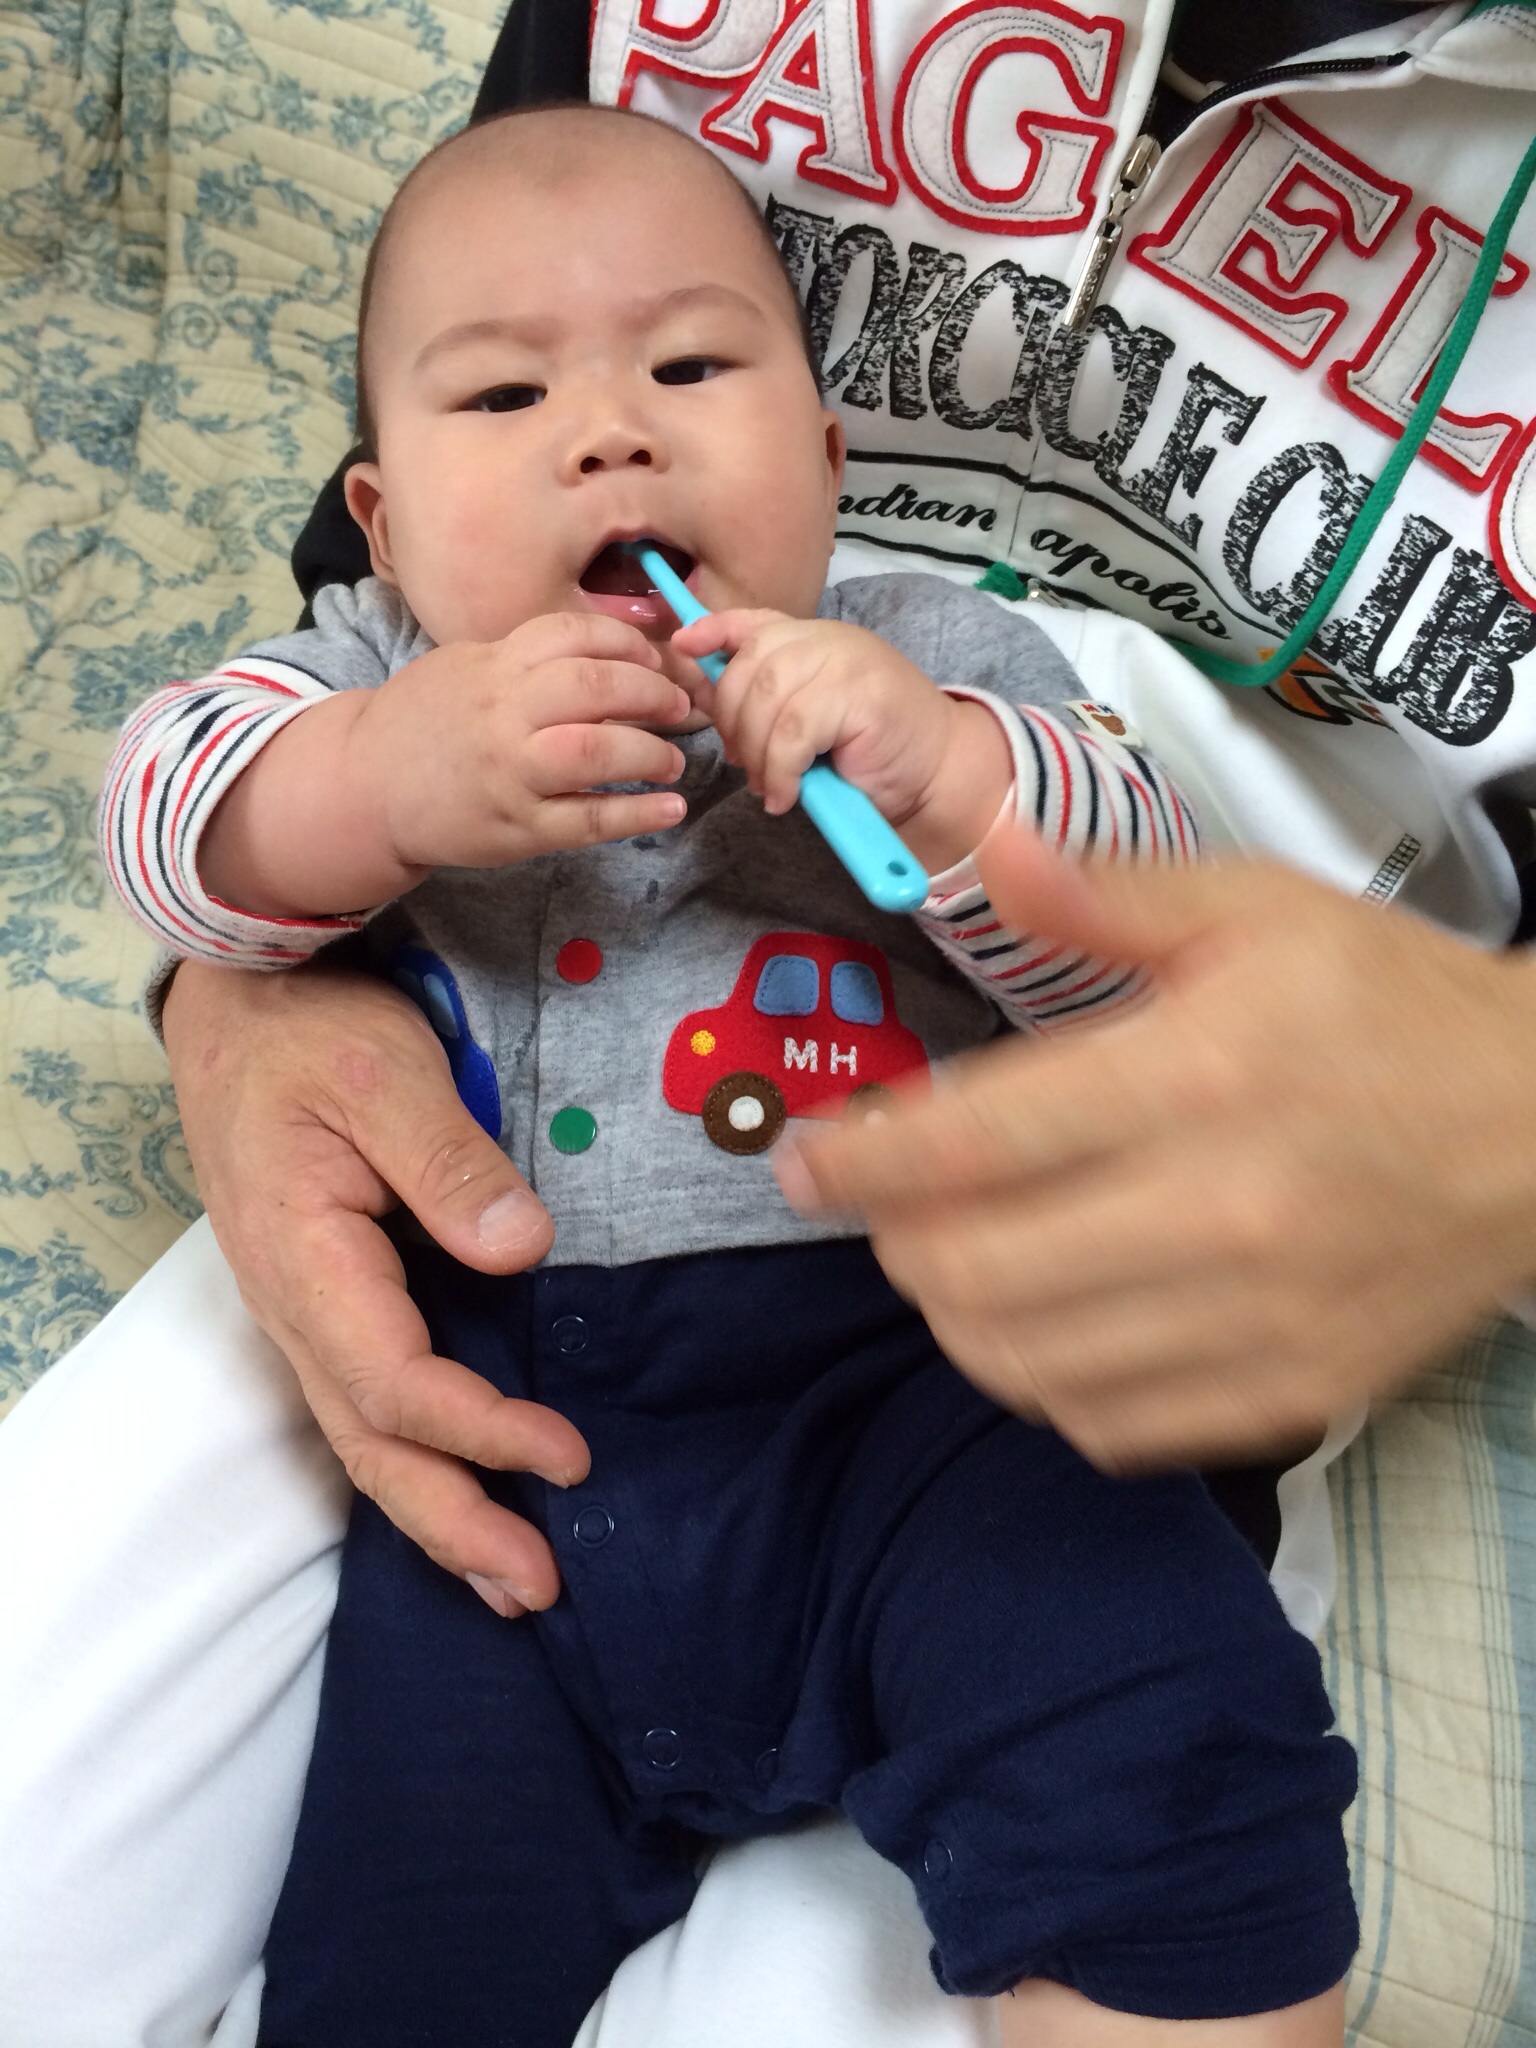 赤ちゃんの歯磨き